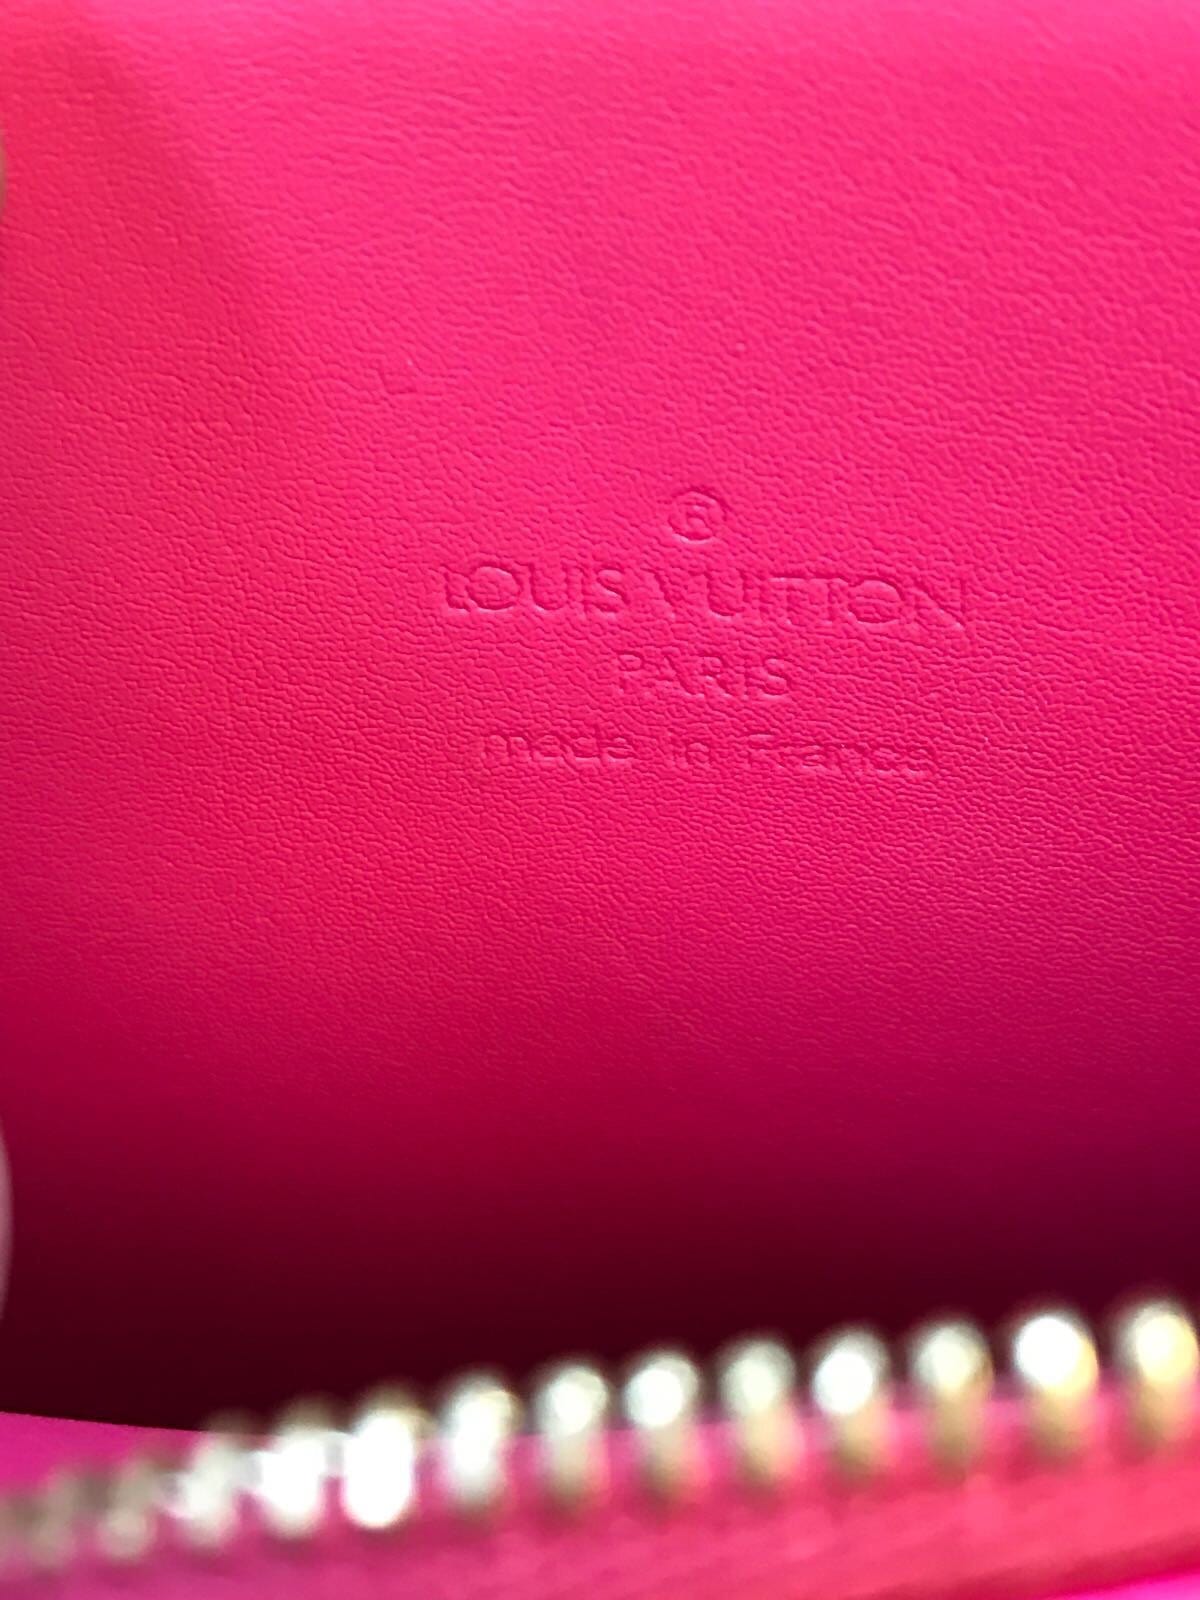 Louis Vuitton Vernis Mott Shoulder Bag - Madam Virtue & Co